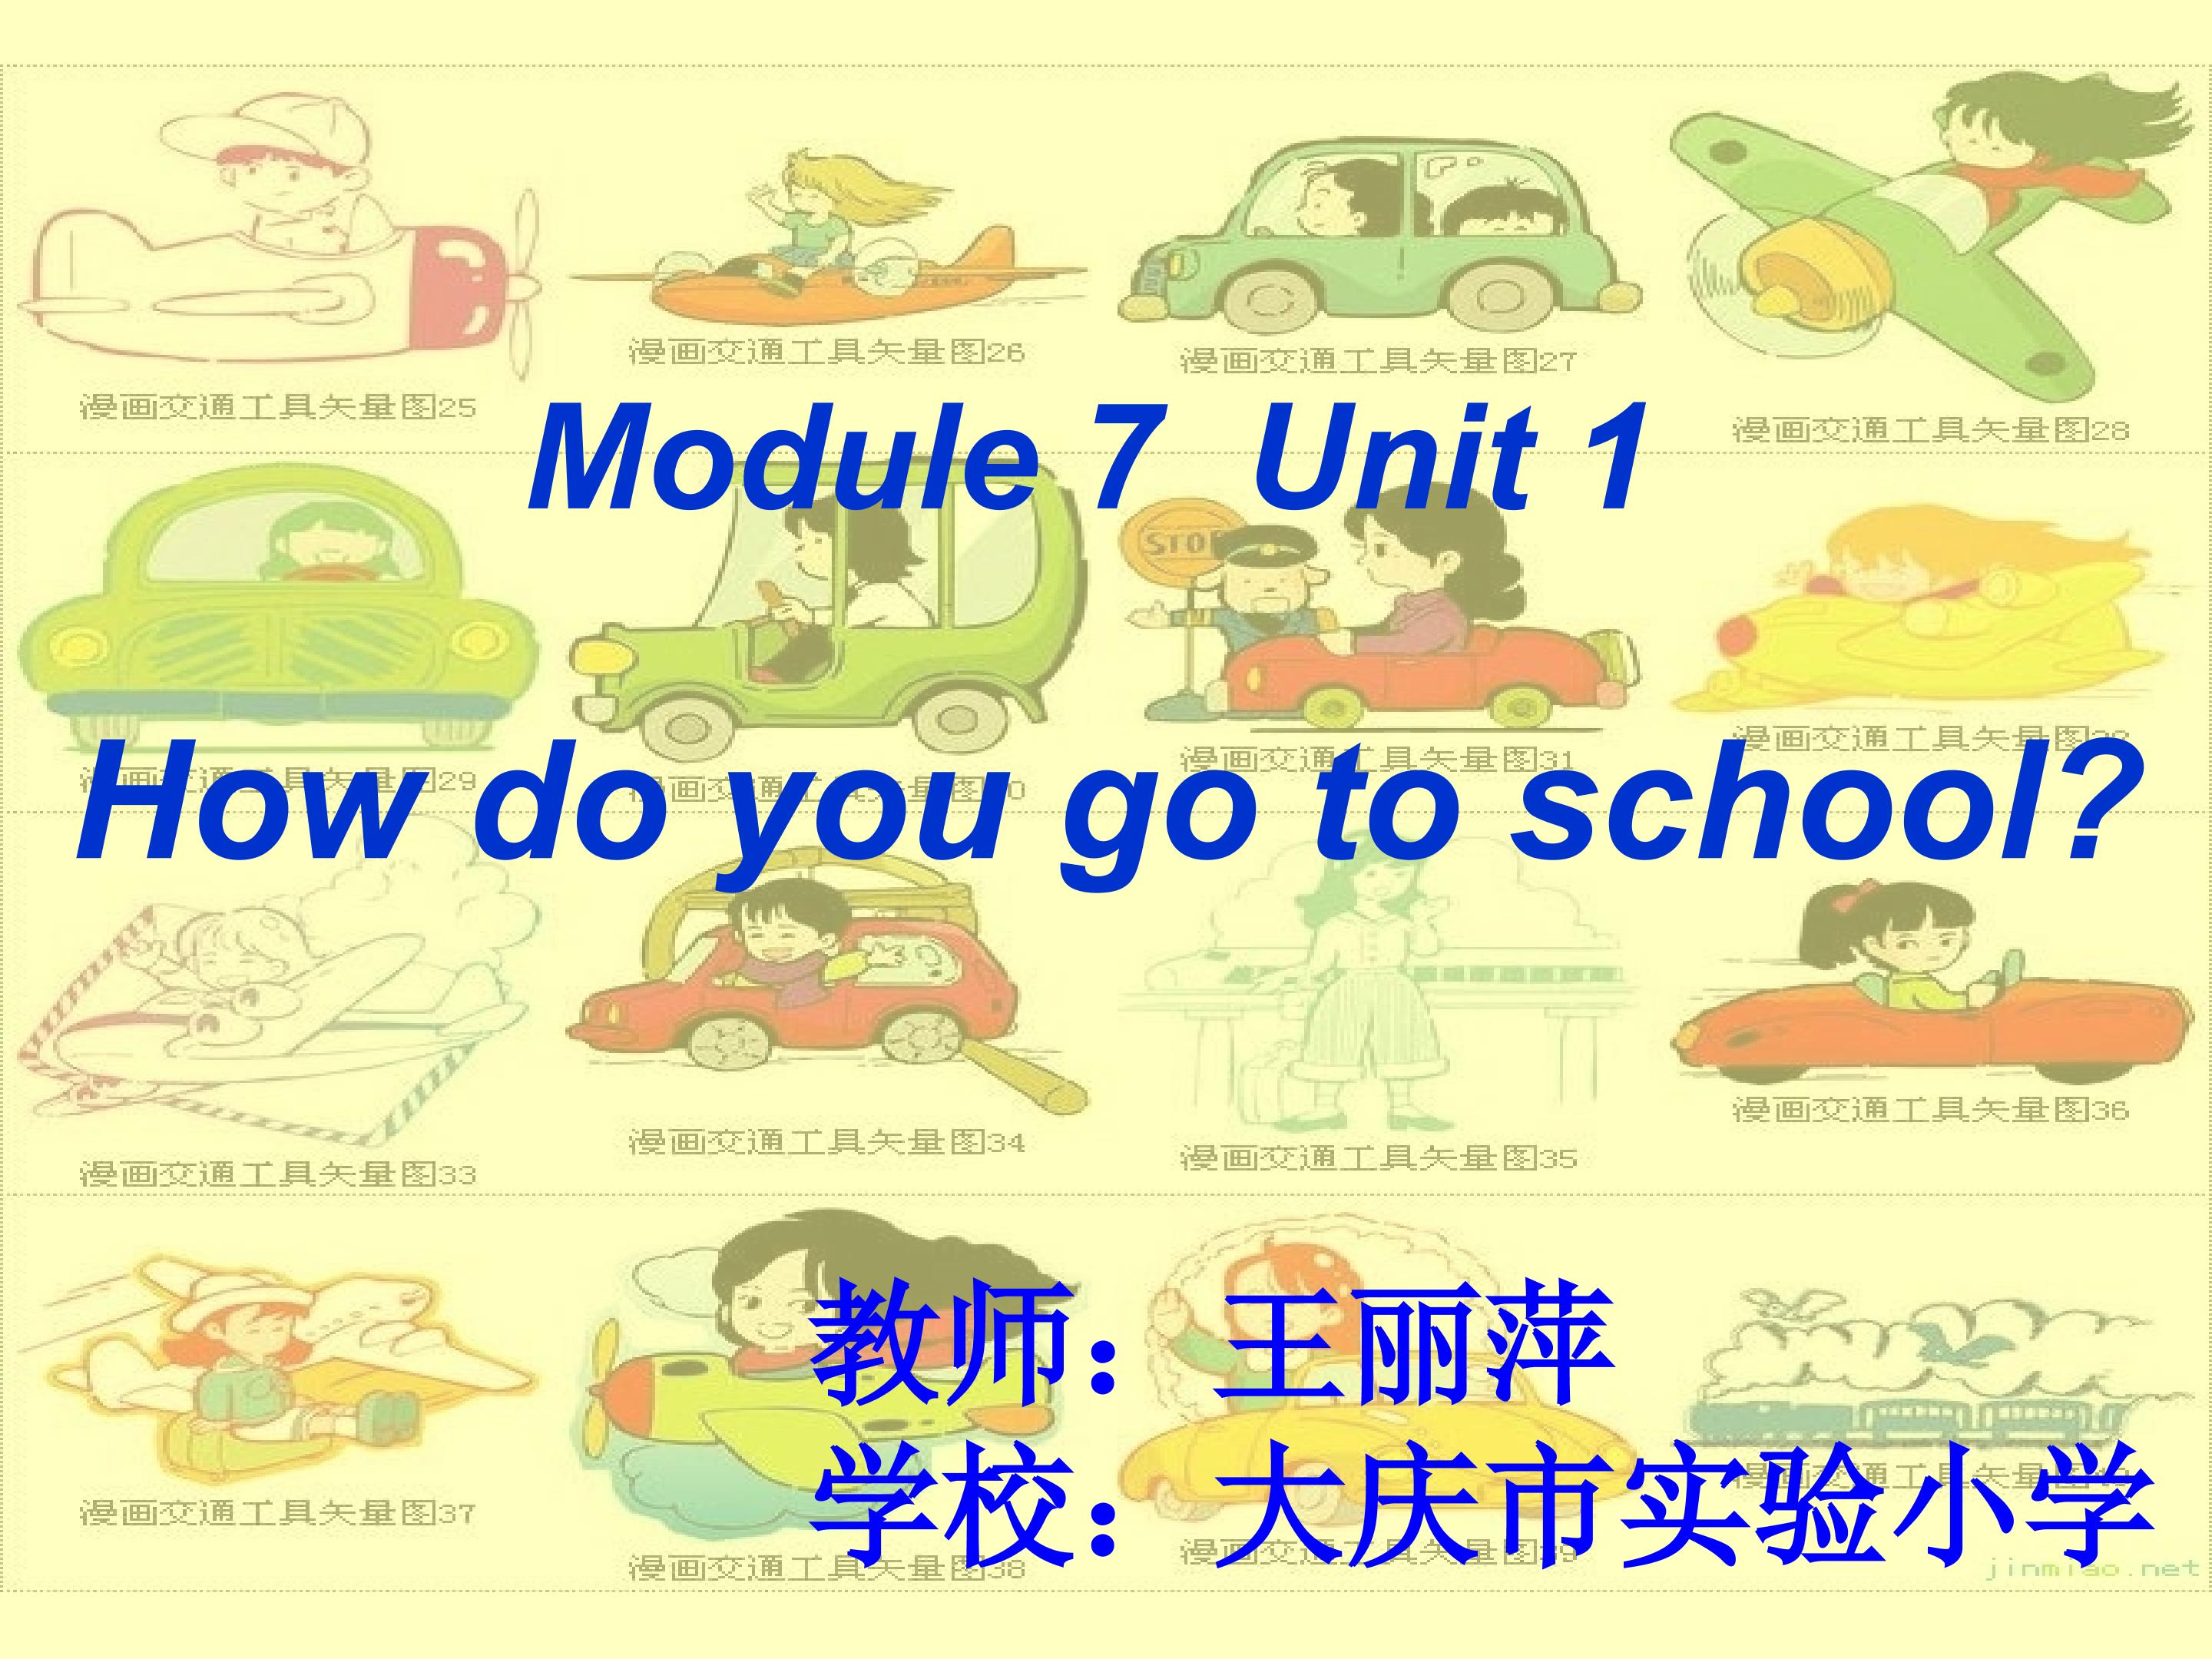 M 7 U 1 How do you go to school?